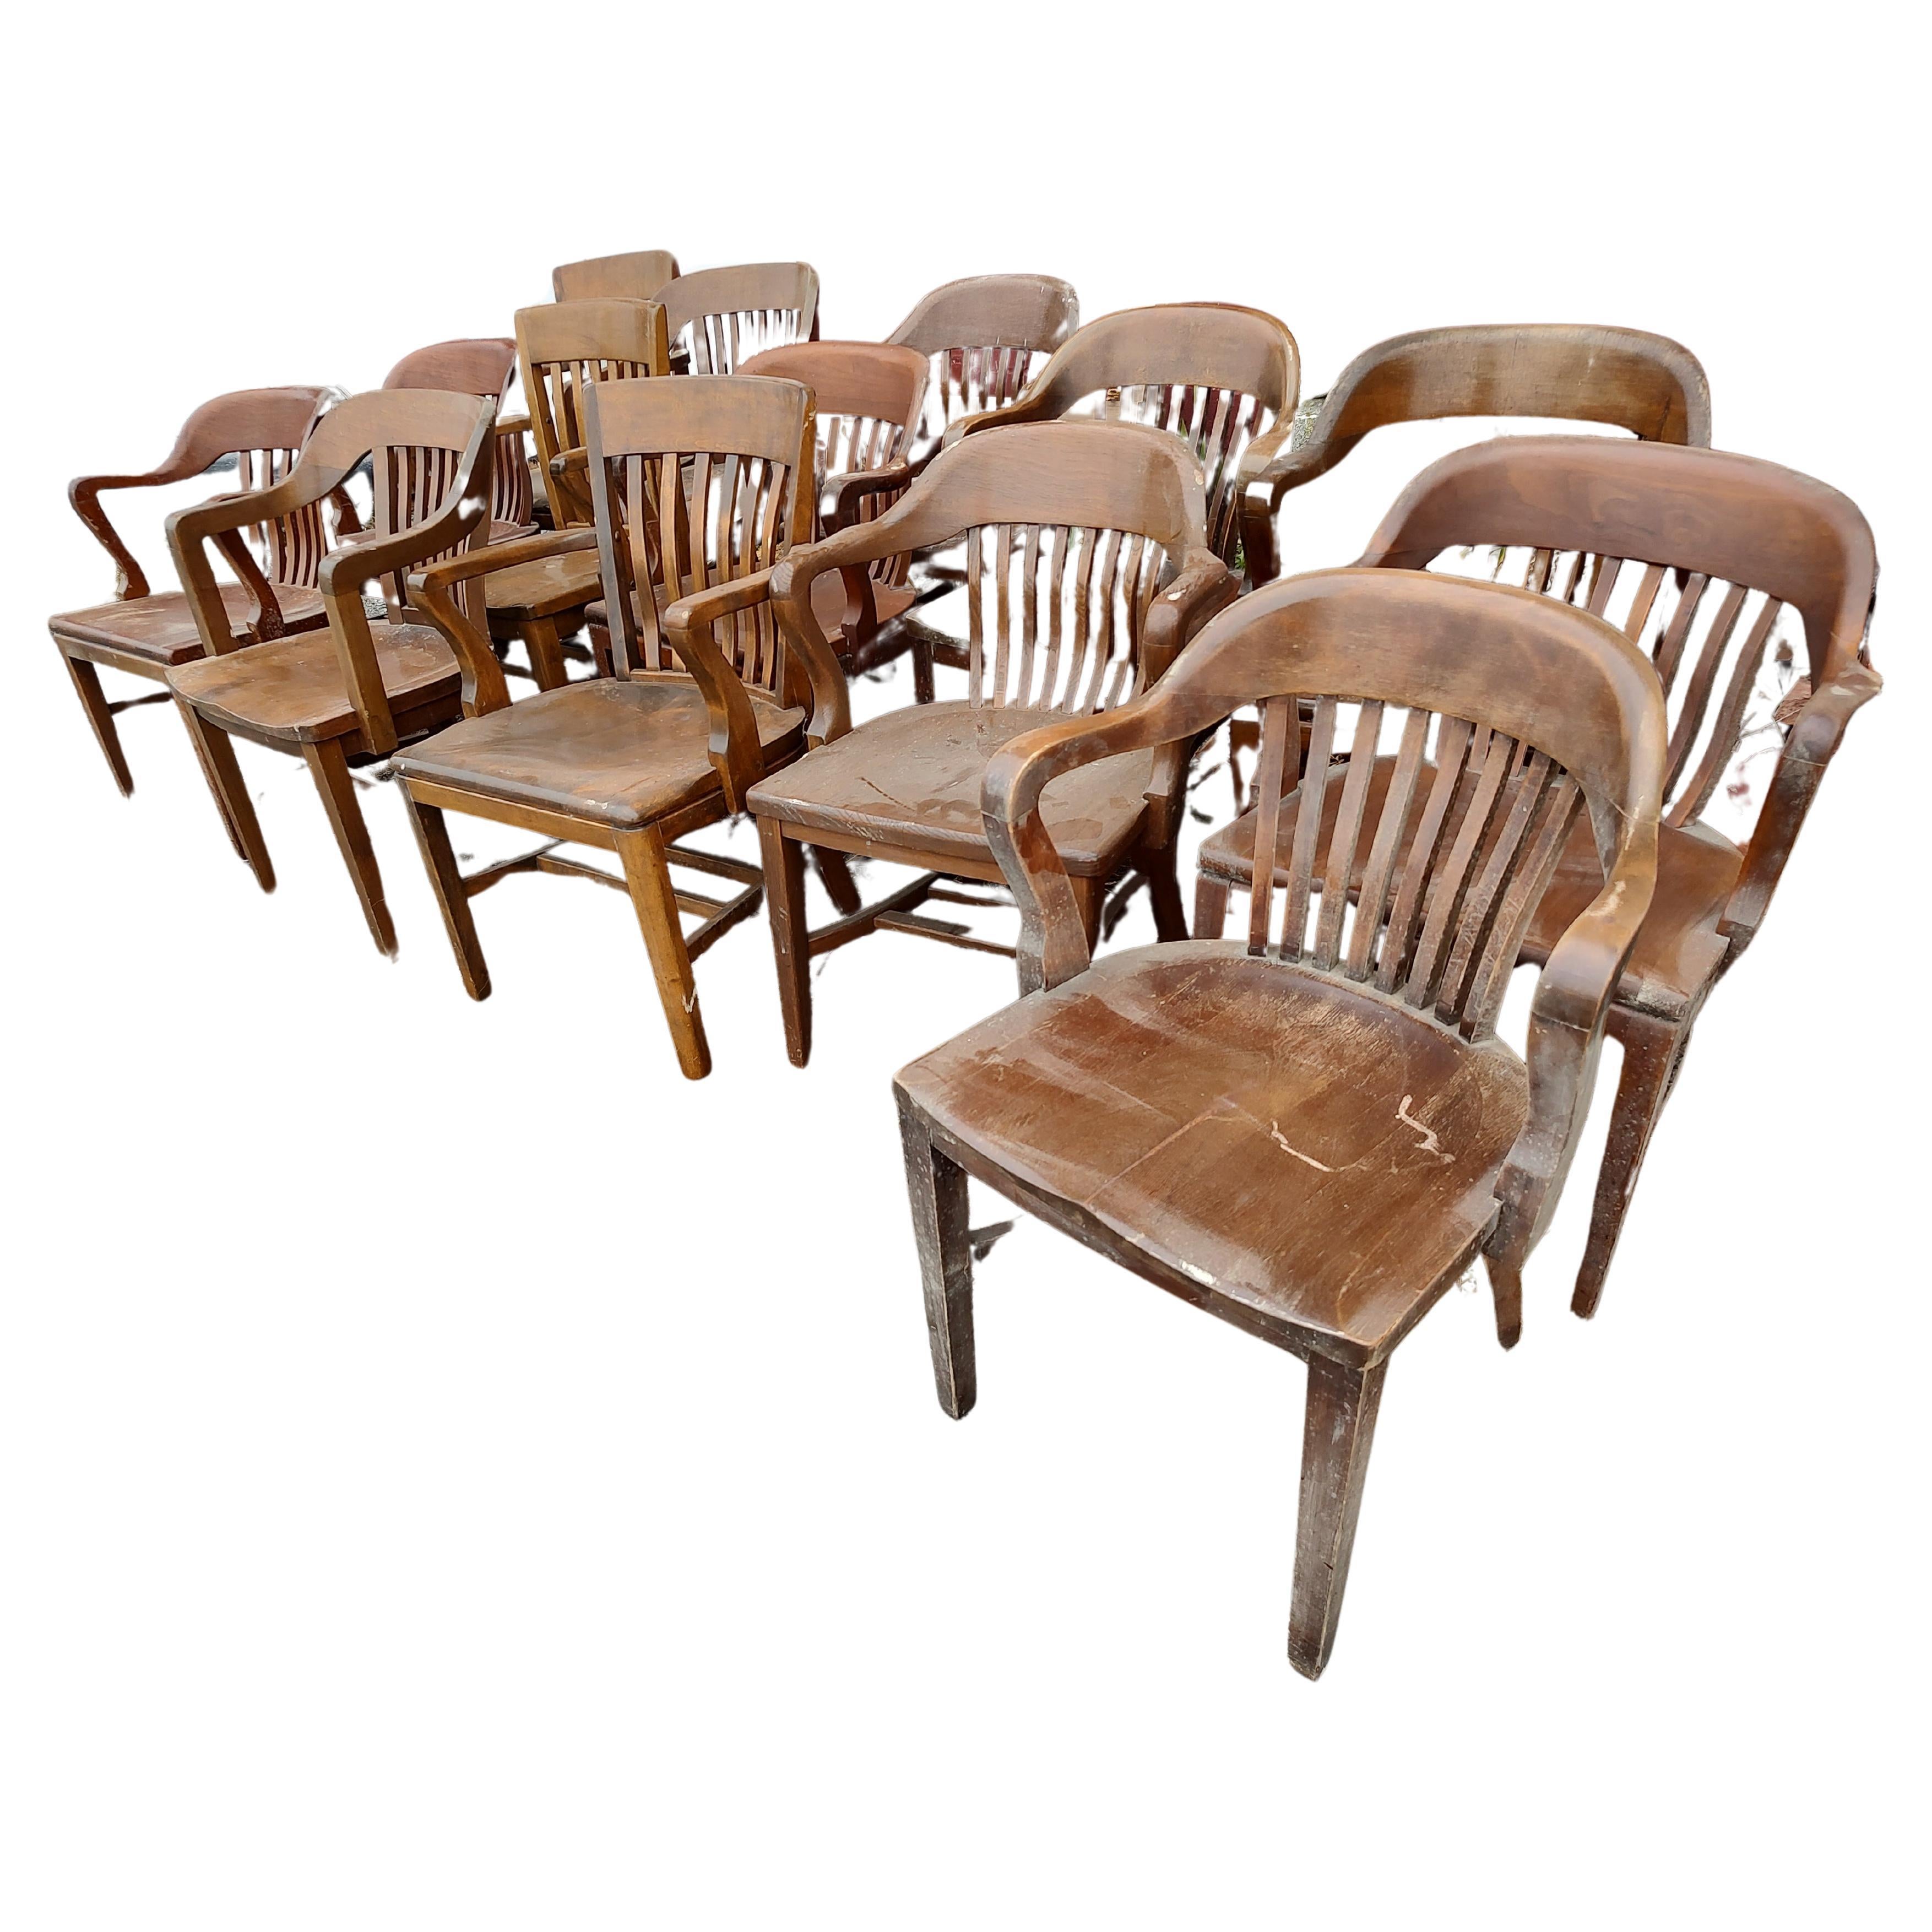 Fabelhafte Sammlung von Bankiersstühlen aus Hartholz, die häufig in Büros, Geschworenenzimmern, Konferenzzentren usw. zu finden sind. Aus Eiche, Ahorn und Nussbaum gefertigt, sind diese Stühle eine strapazierfähige Sitzgelegenheit, ideal für den